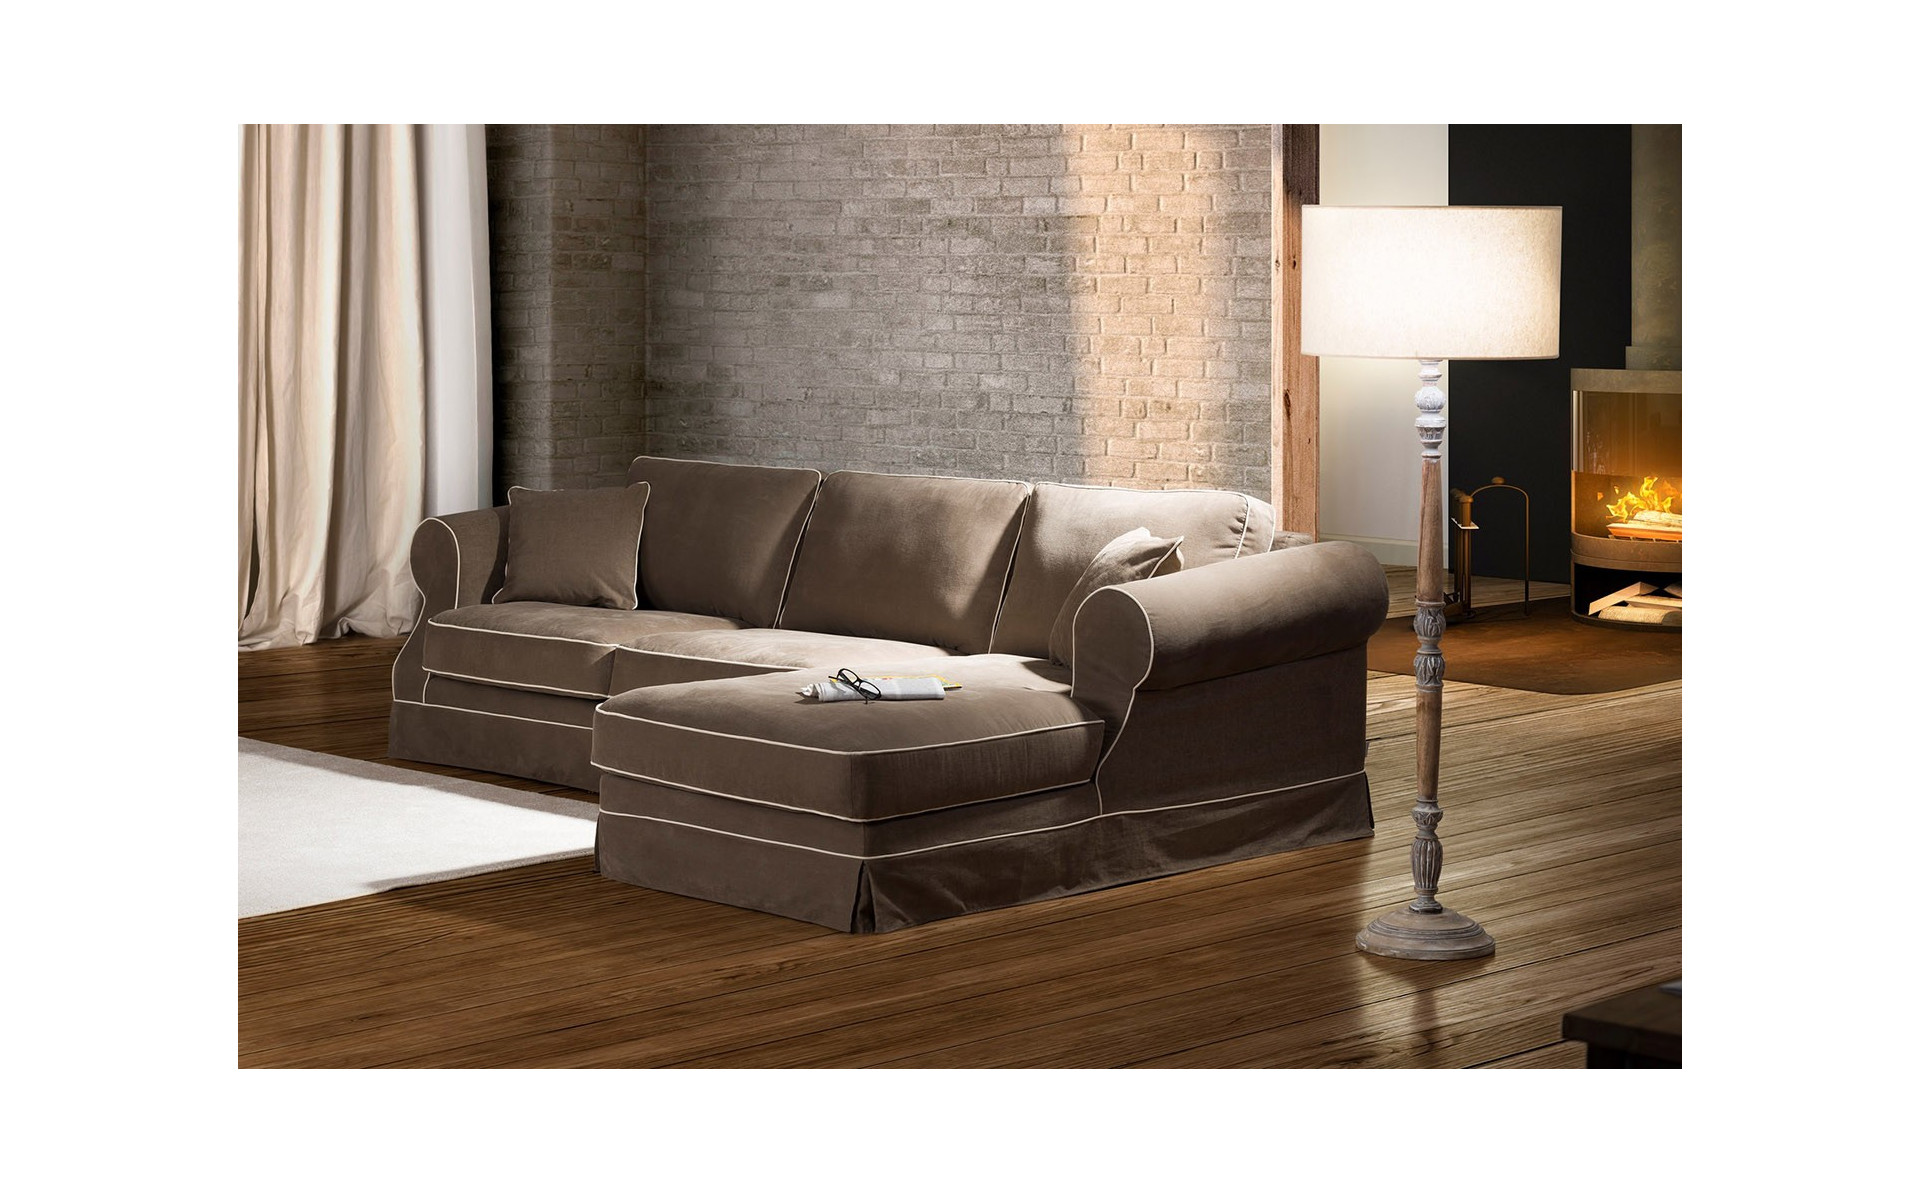 Elena 2,5 sofa z szezlongiem, luźnym pokrowcem i standardowymi oparciami